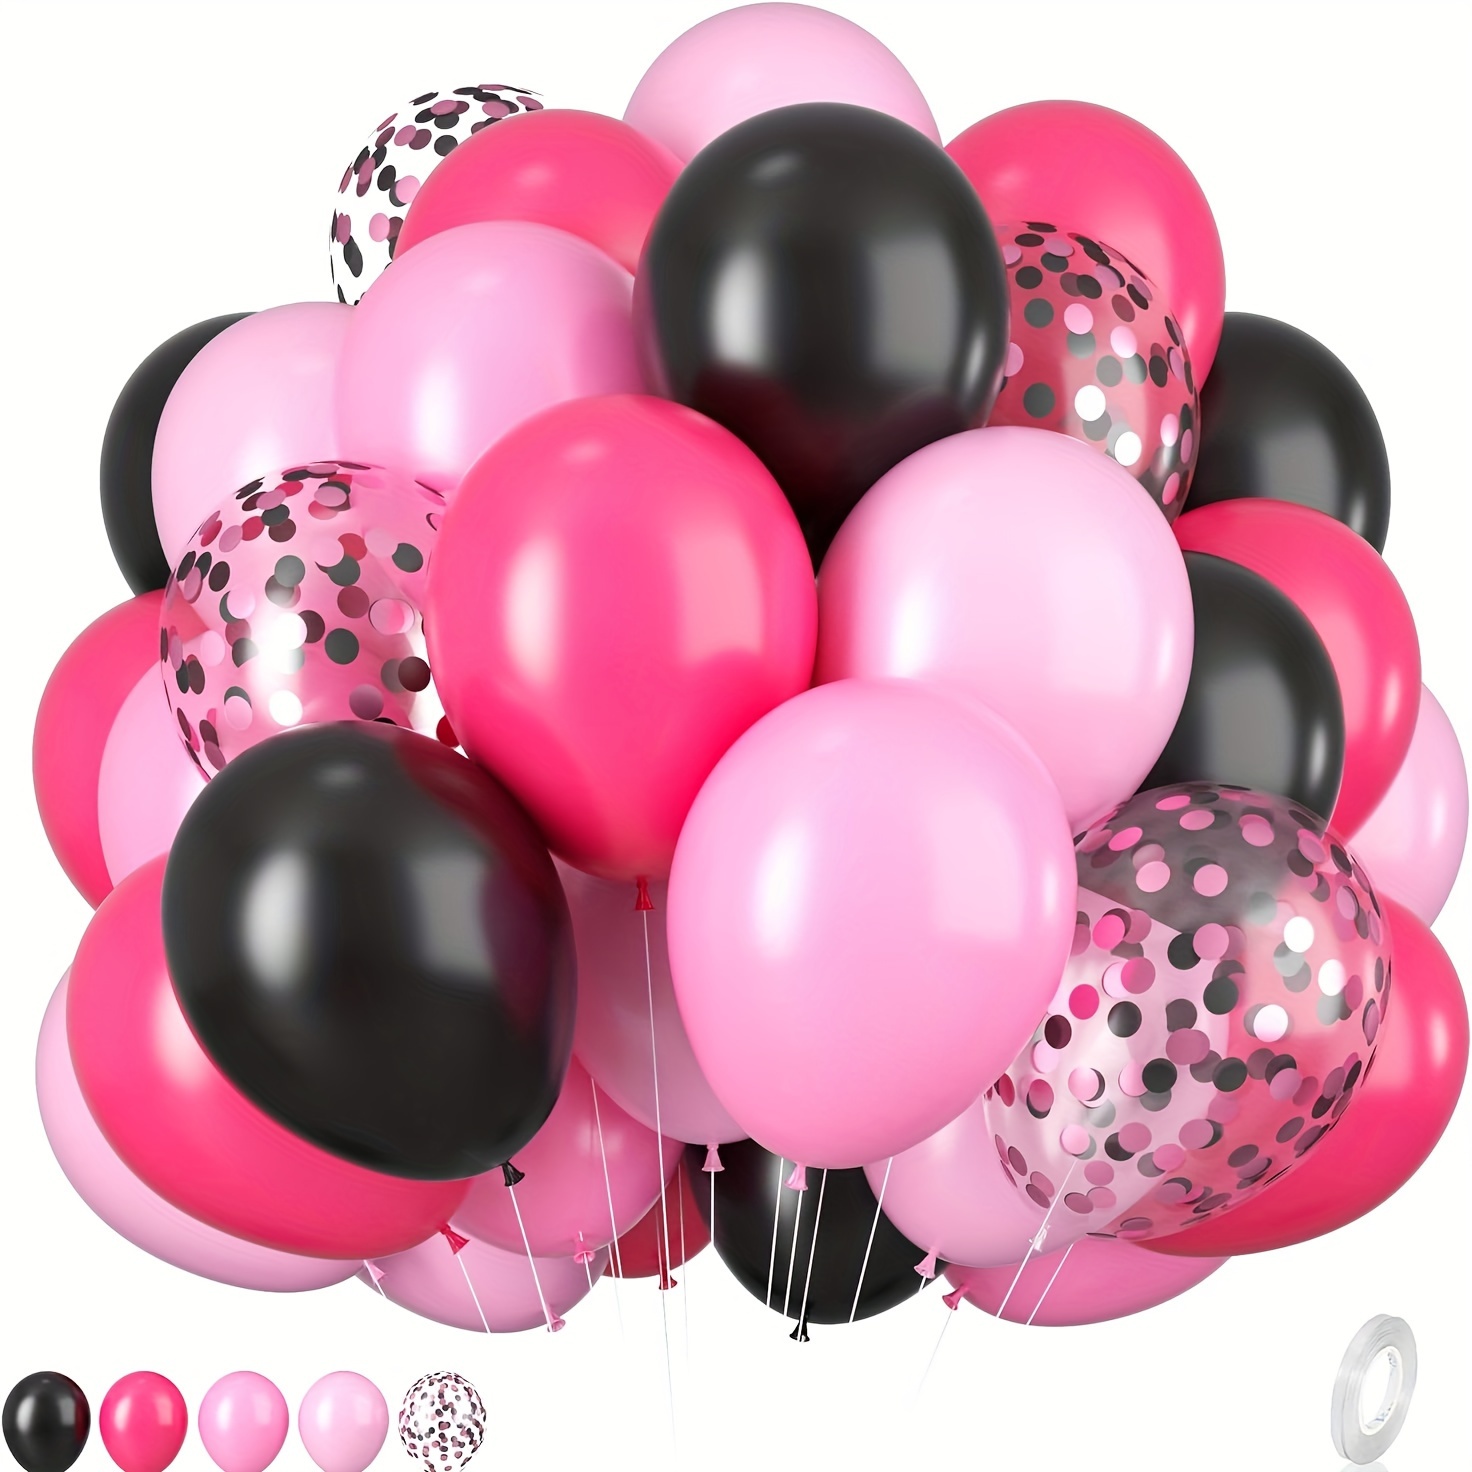 Globos rosa y dorado, 50 globos rosa claro, globos rosa pastel, globos  metálicos dorados para decoraciones de fiestas, decoraciones de Navidad